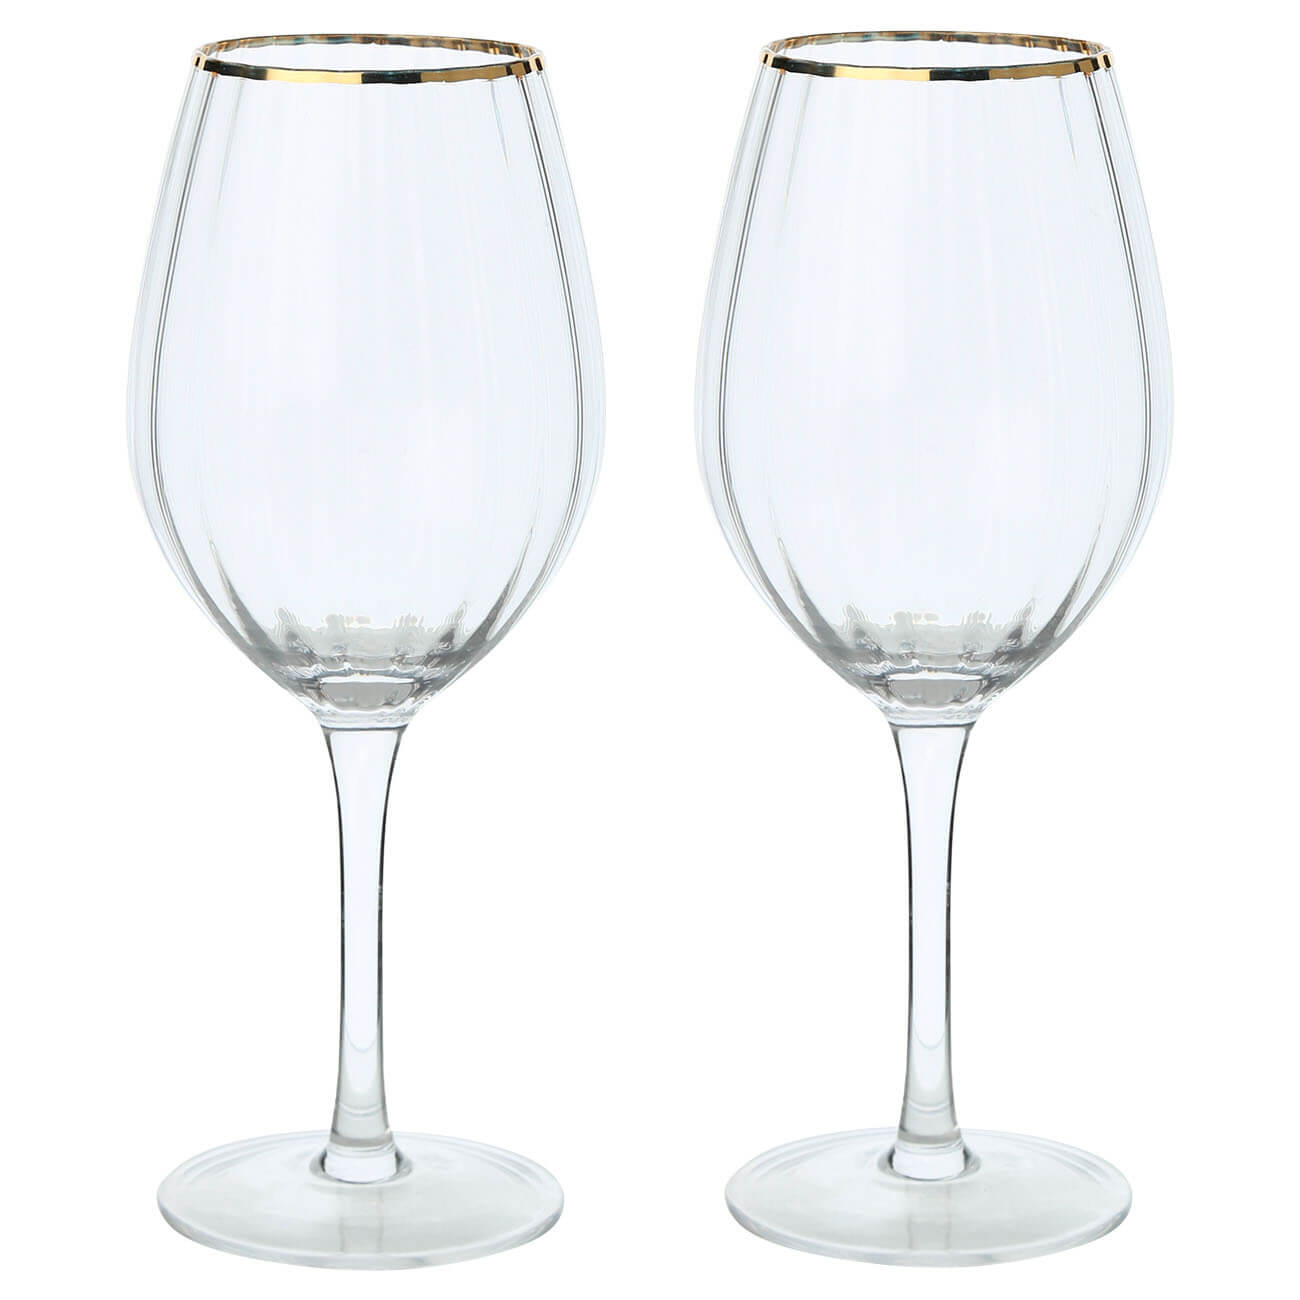 Бокал для вина, 530 мл, 2 шт, стекло, с золотистым кантом, Lombardy R Gold изображение № 1